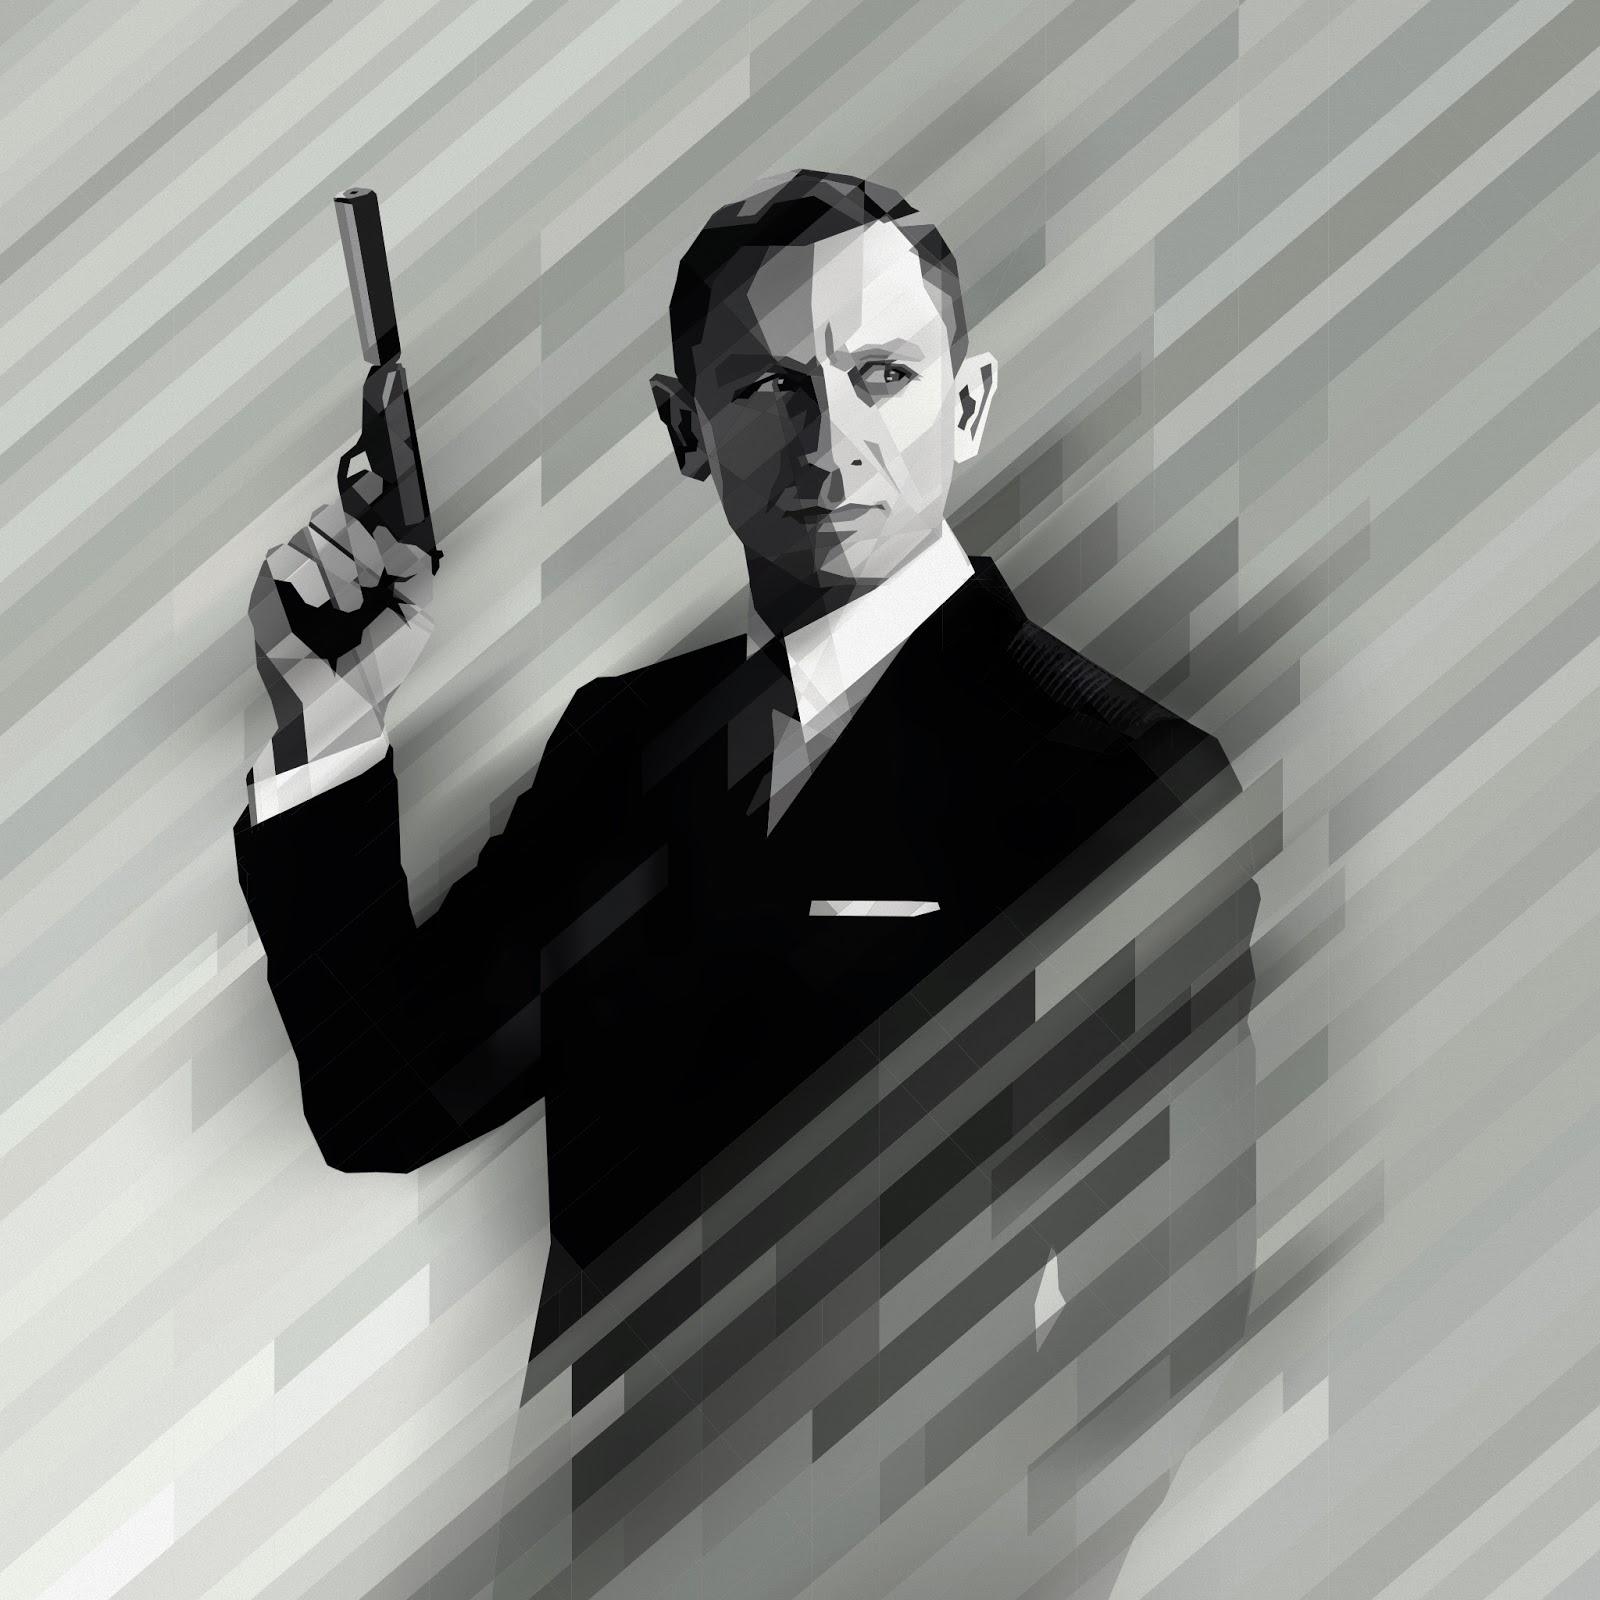 Bond Skyfall 007 iPad Retina Wallpaper. Free iPad Retina HD Wallpaper